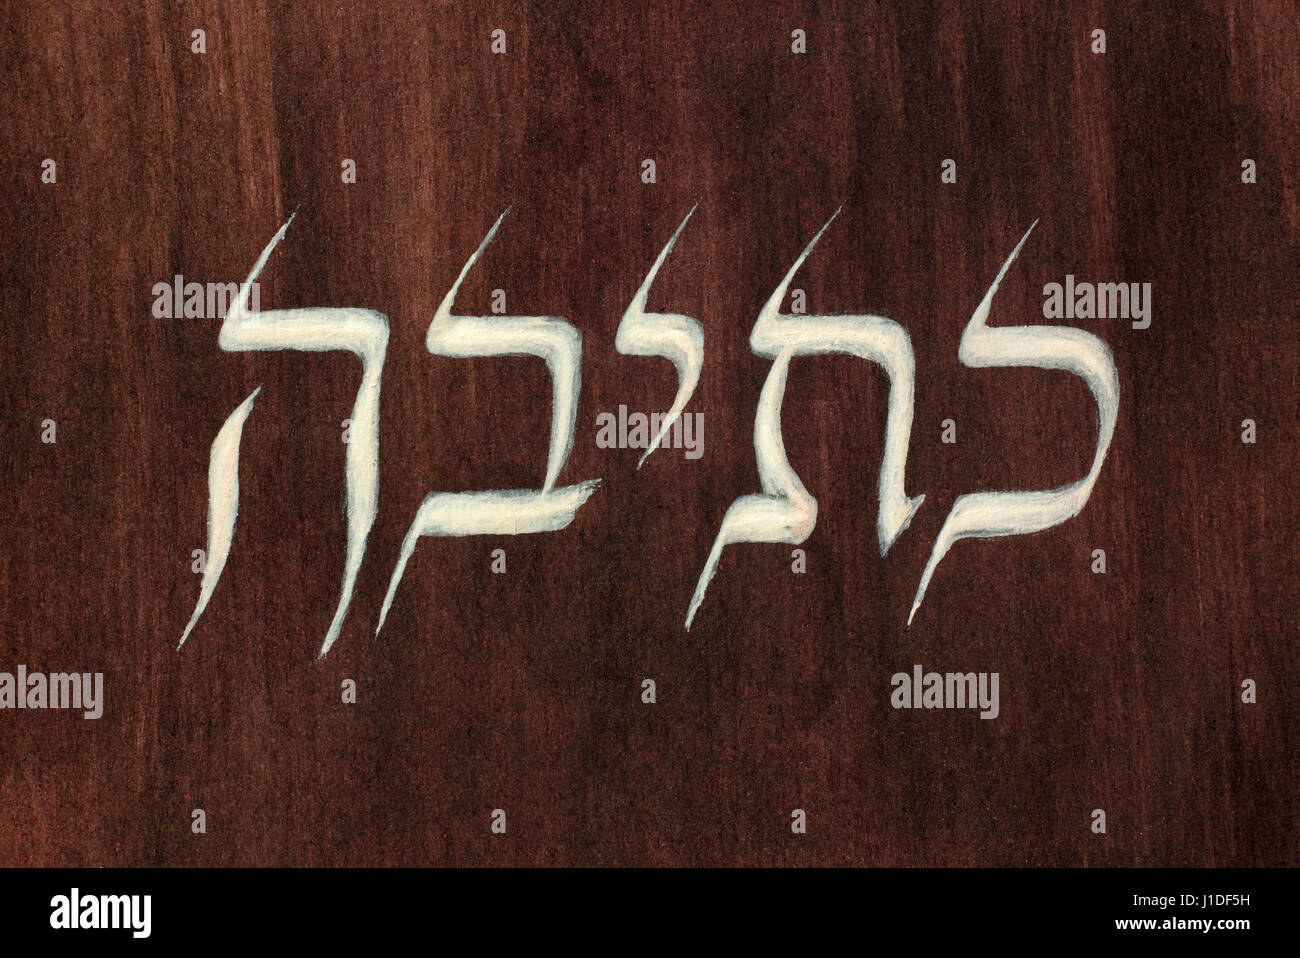 Gemalte Wort schreiben in hebräischer Sprache und Schrift auf dunklem lackiertem Papier Stockfoto